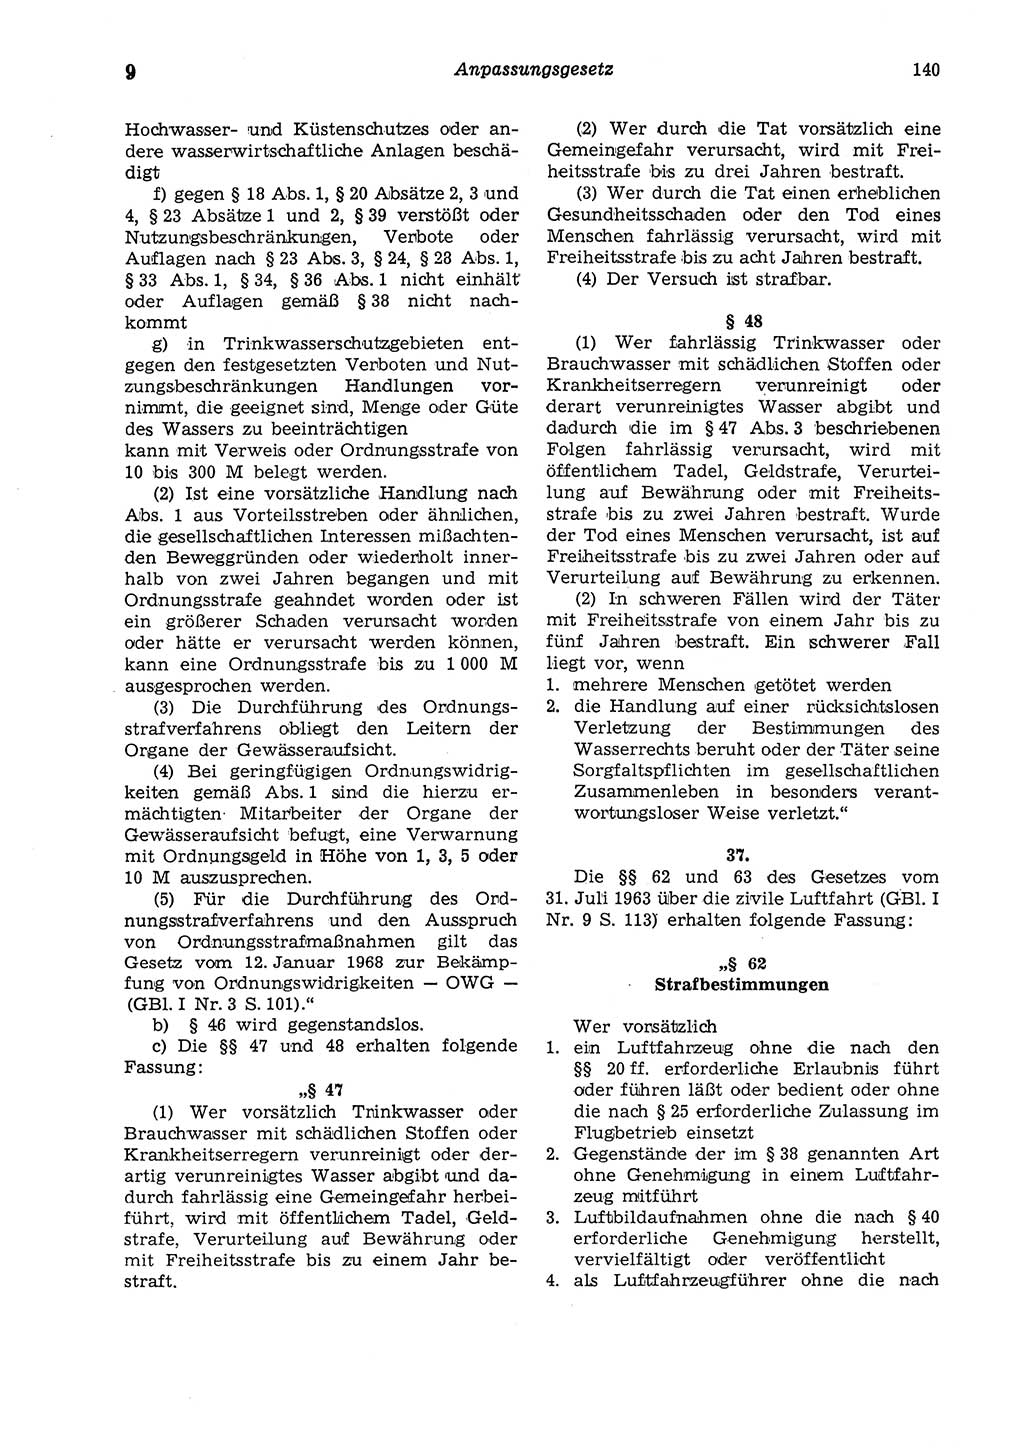 Strafgesetzbuch (StGB) der Deutschen Demokratischen Republik (DDR) und angrenzende Gesetze und Bestimmungen 1975, Seite 140 (StGB DDR Ges. Best. 1975, S. 140)